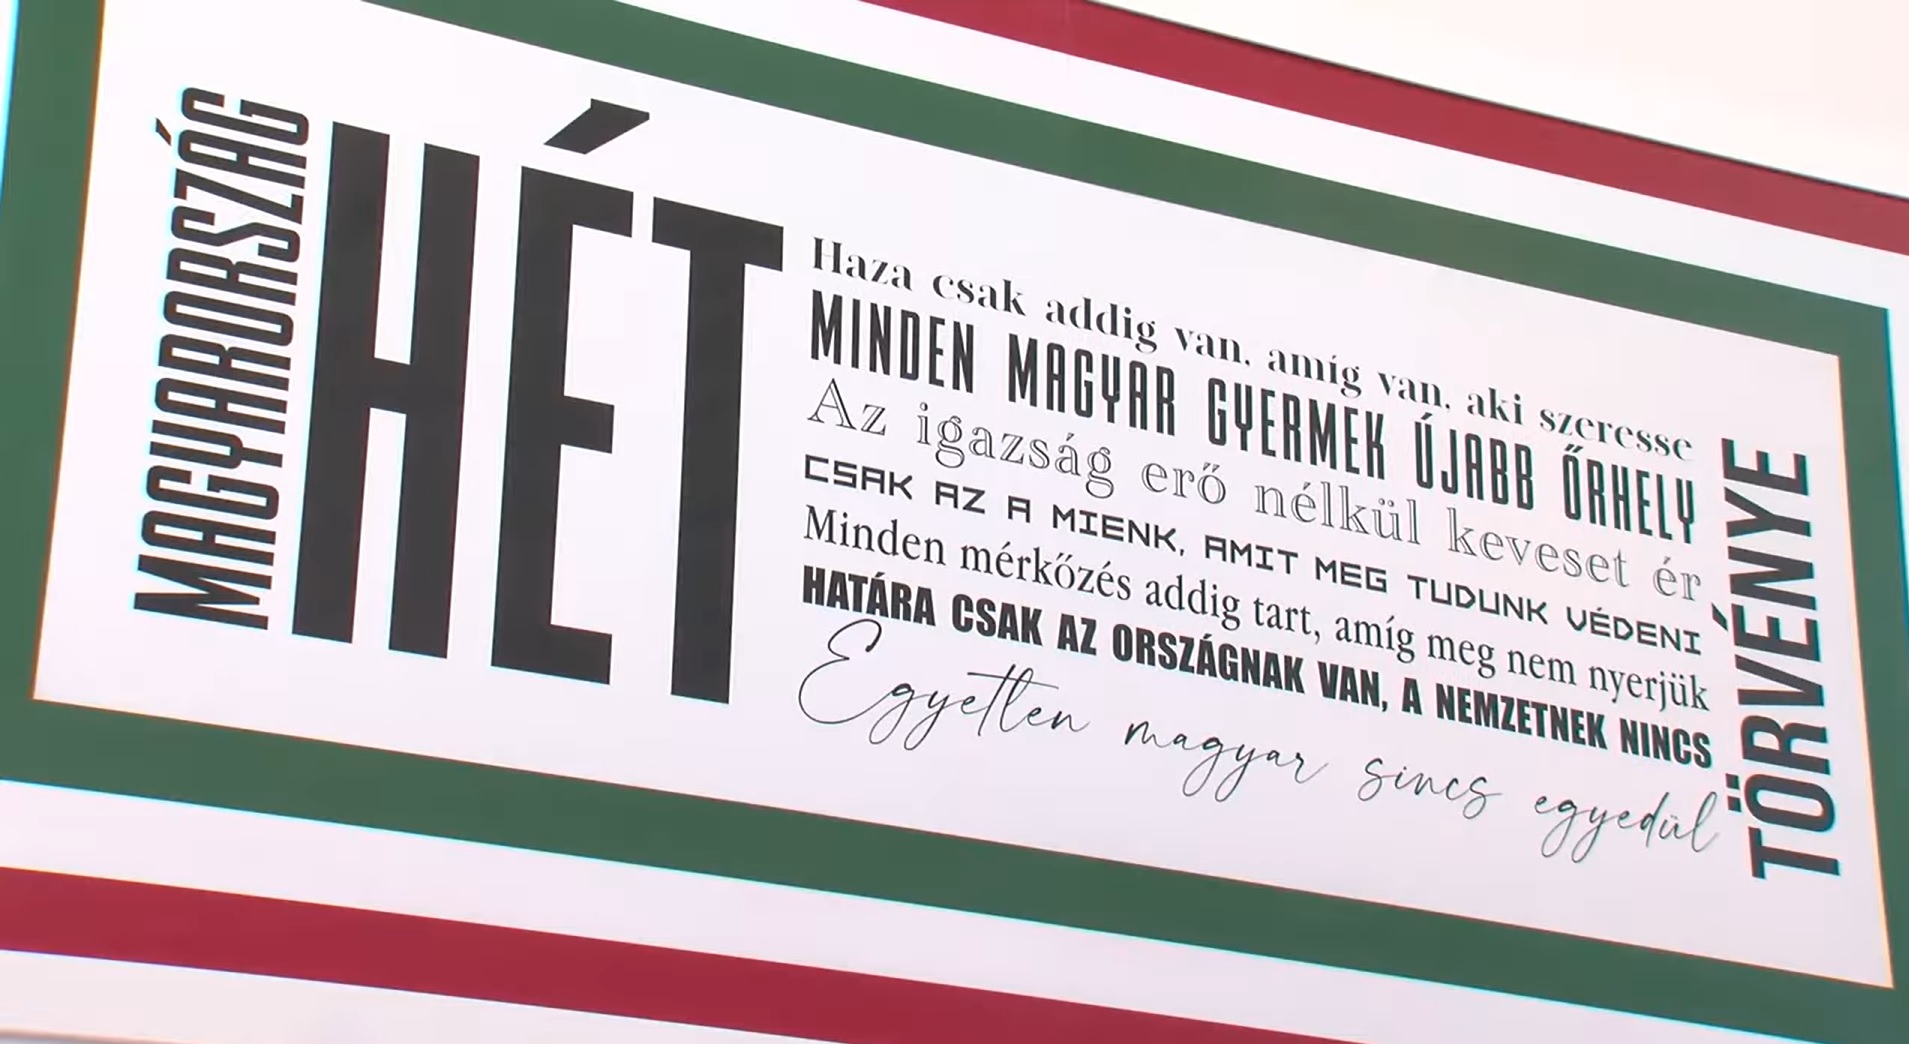 A csepeli gimnázium igazgatója sem tudja, hogyan kerültek az Orbán-idézetek a falra